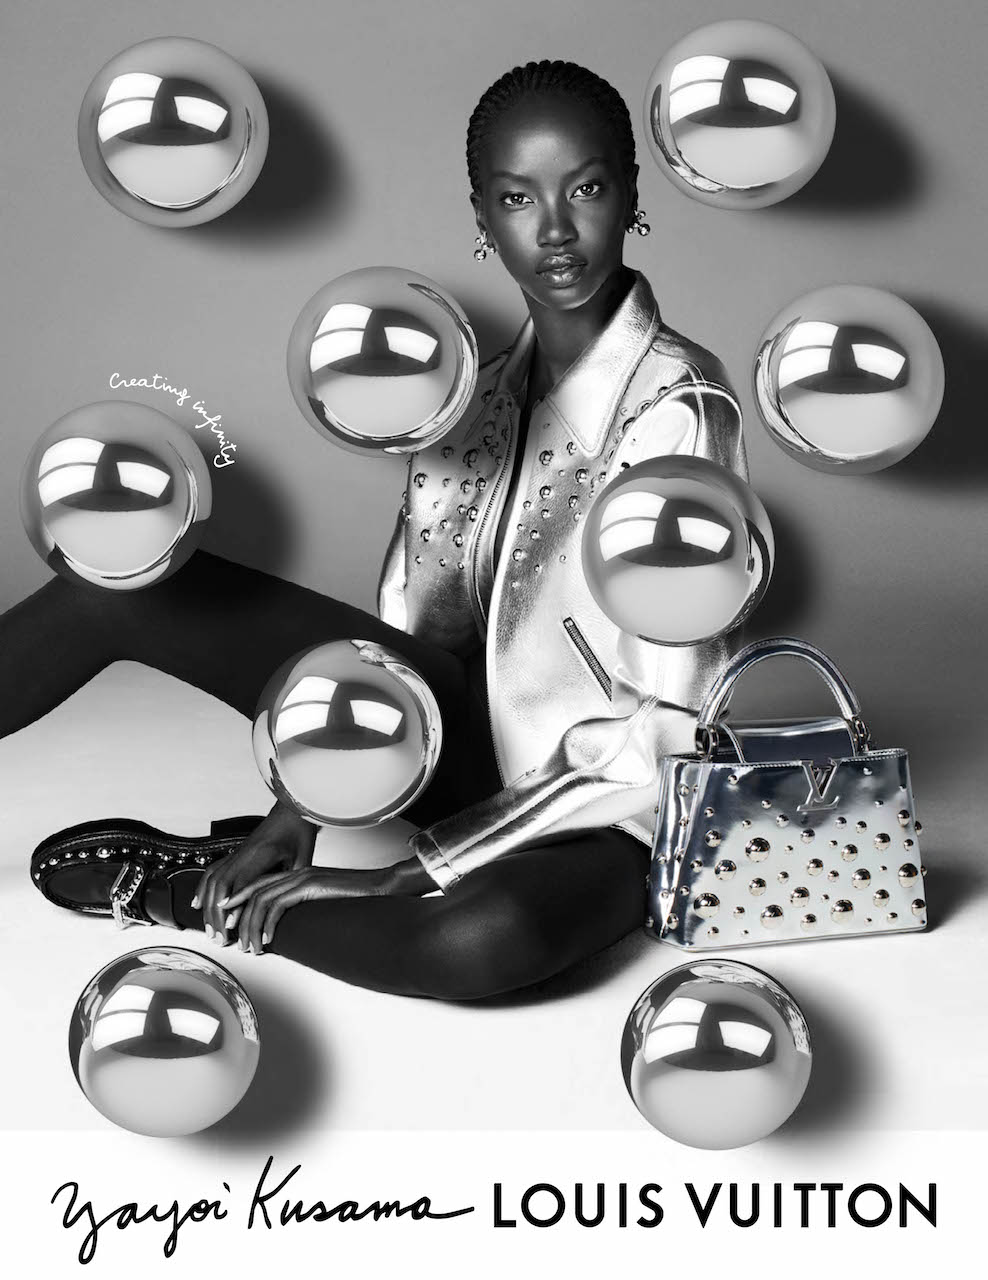 Louis Vuitton x Yayoi Kusama Drops New Collaboration